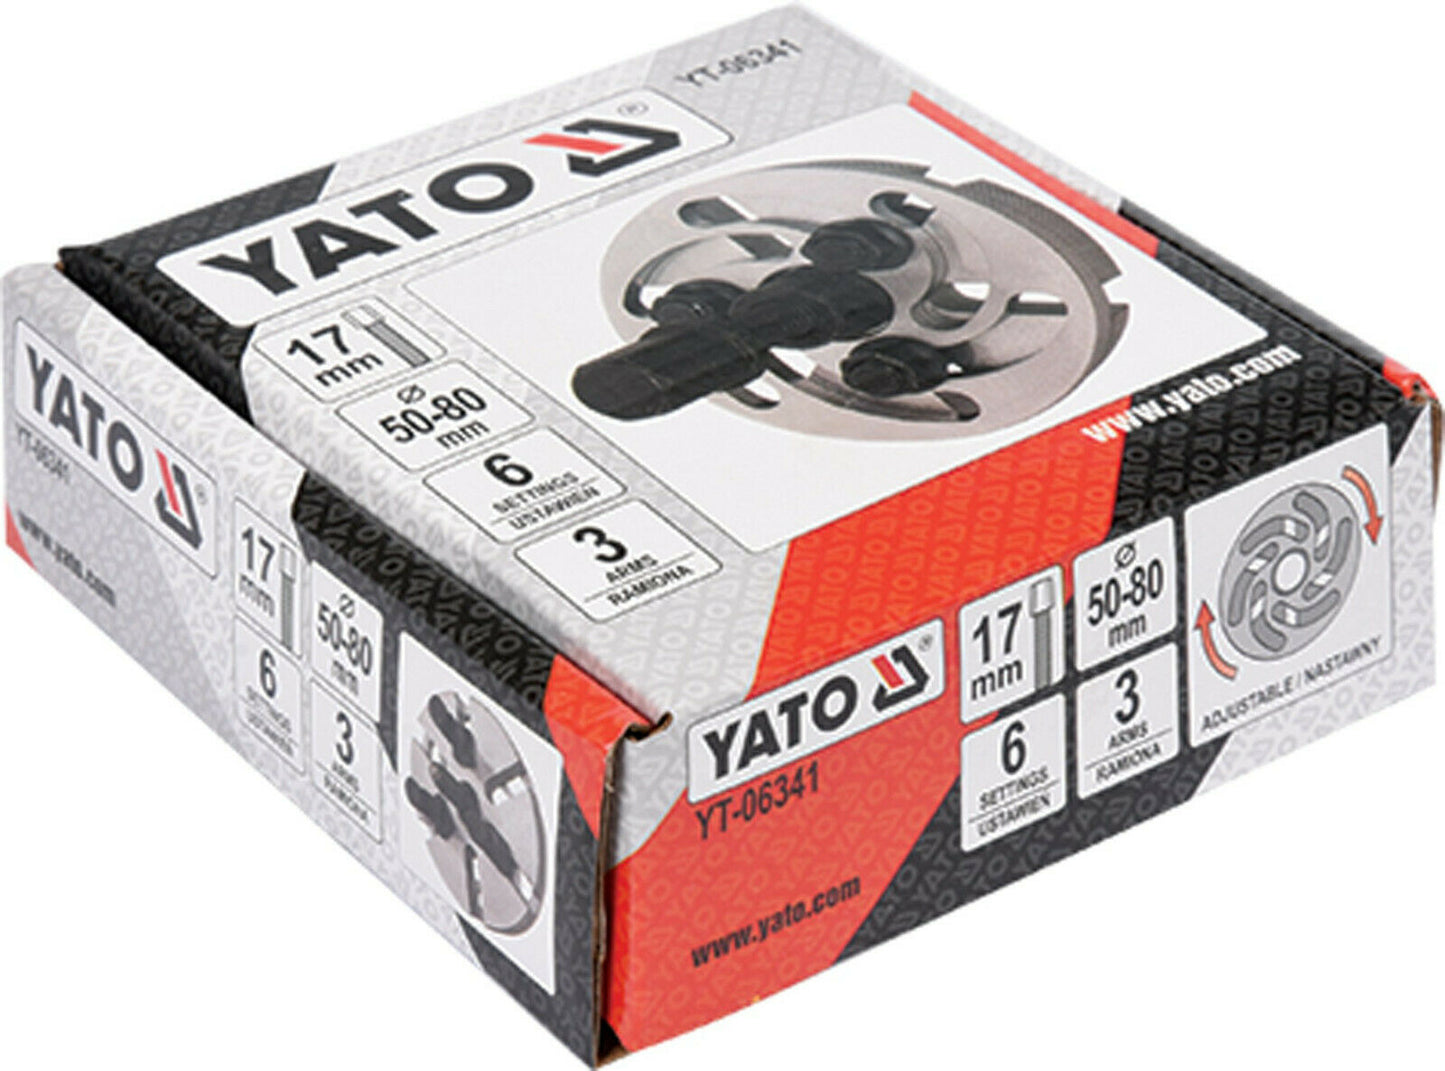 Yato YT-06341 Riemenscheiben Abzieher Universal Steuerradzieher 50-80 mm 3 Arme